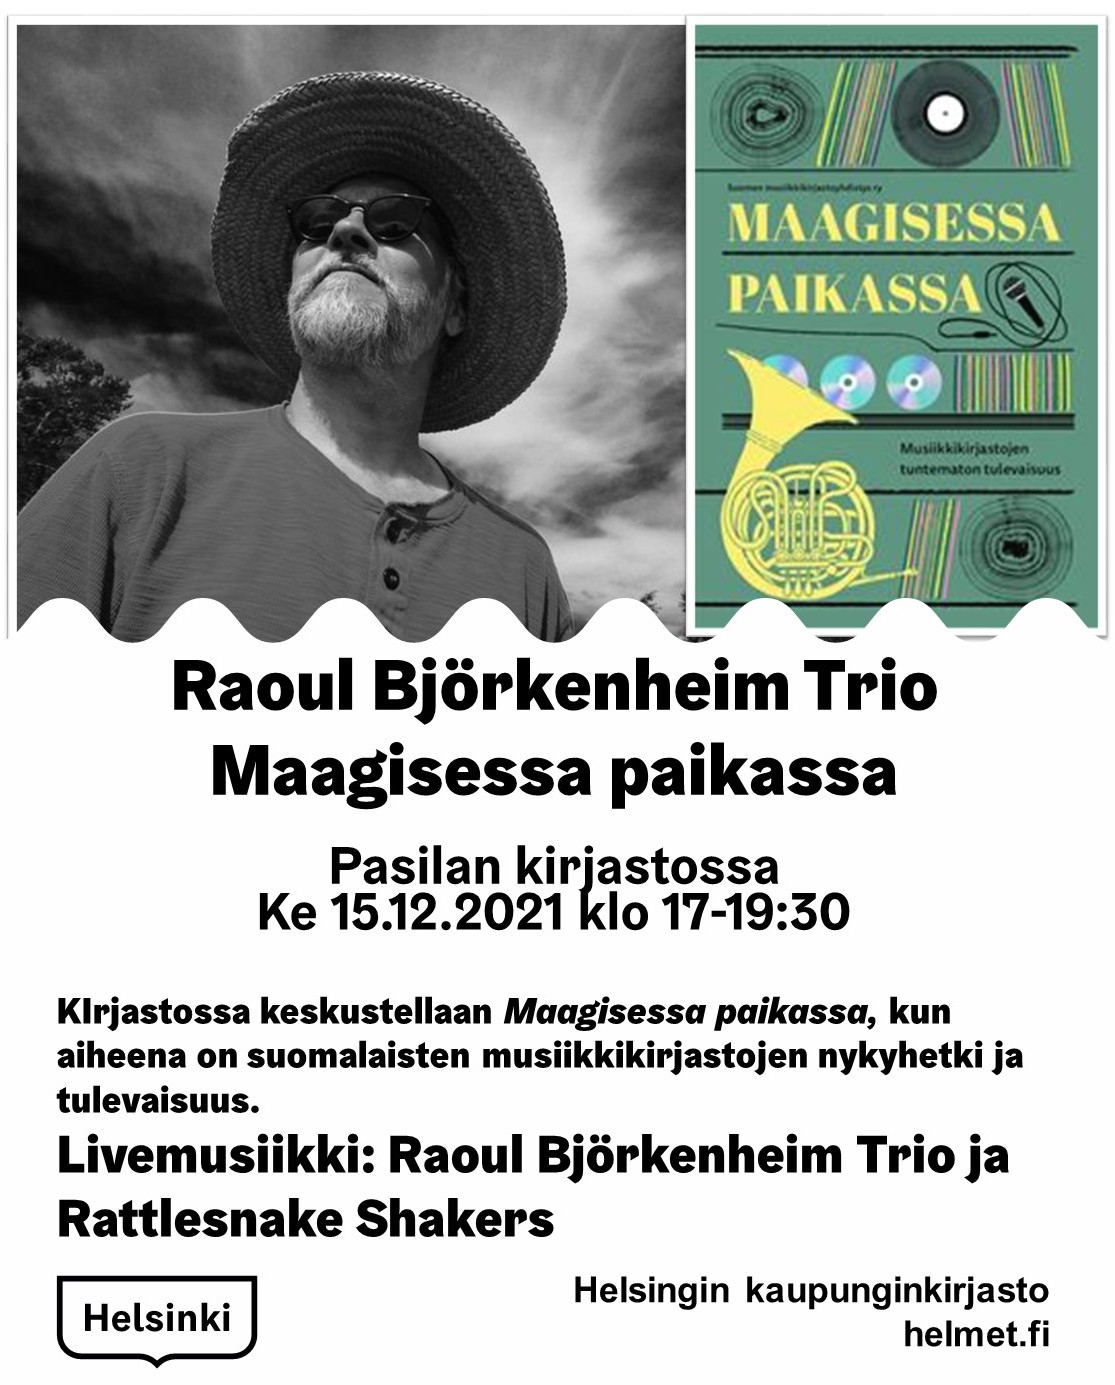 Maagisessa paikassa Pasilan kirjaston Auditoriossa 15.12.2021.